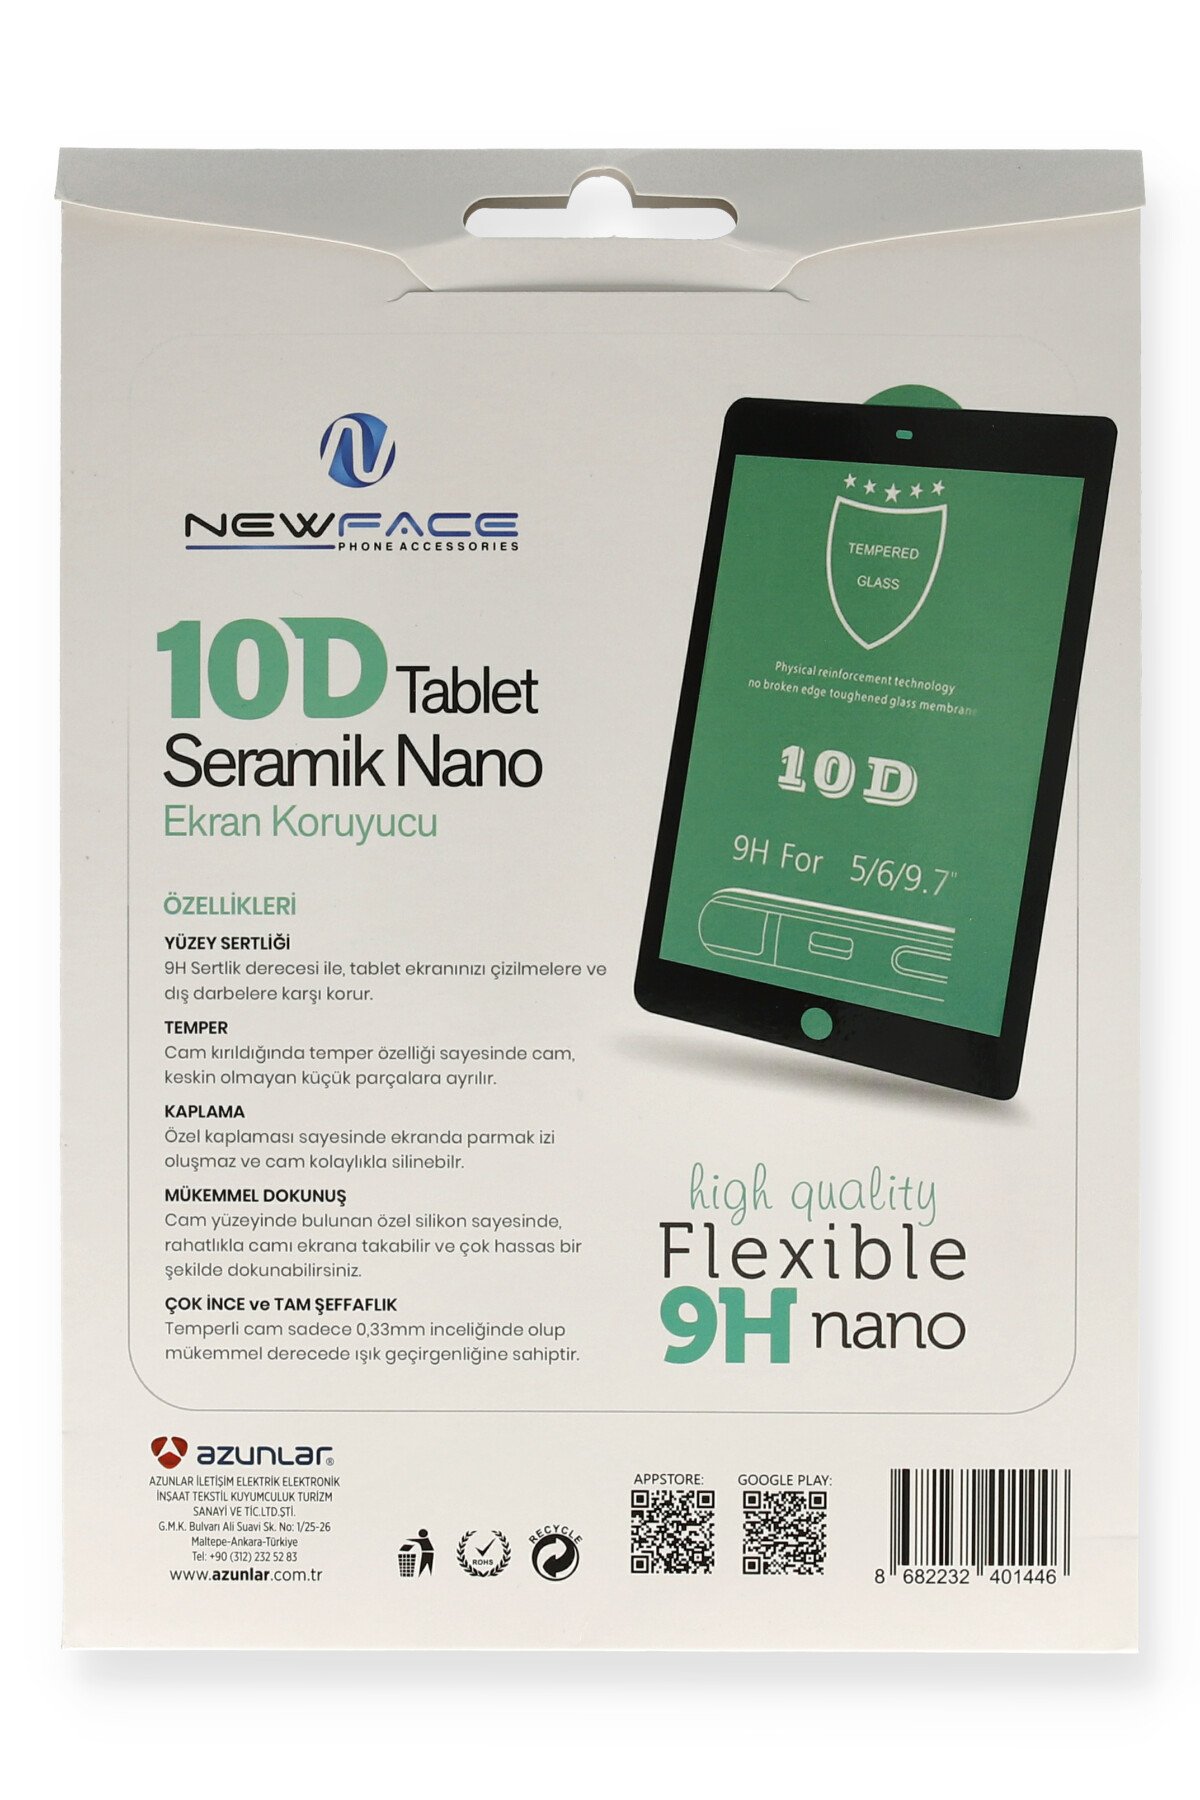 Newface Huawei MatePad 8 Tablet 10D Seramik Nano